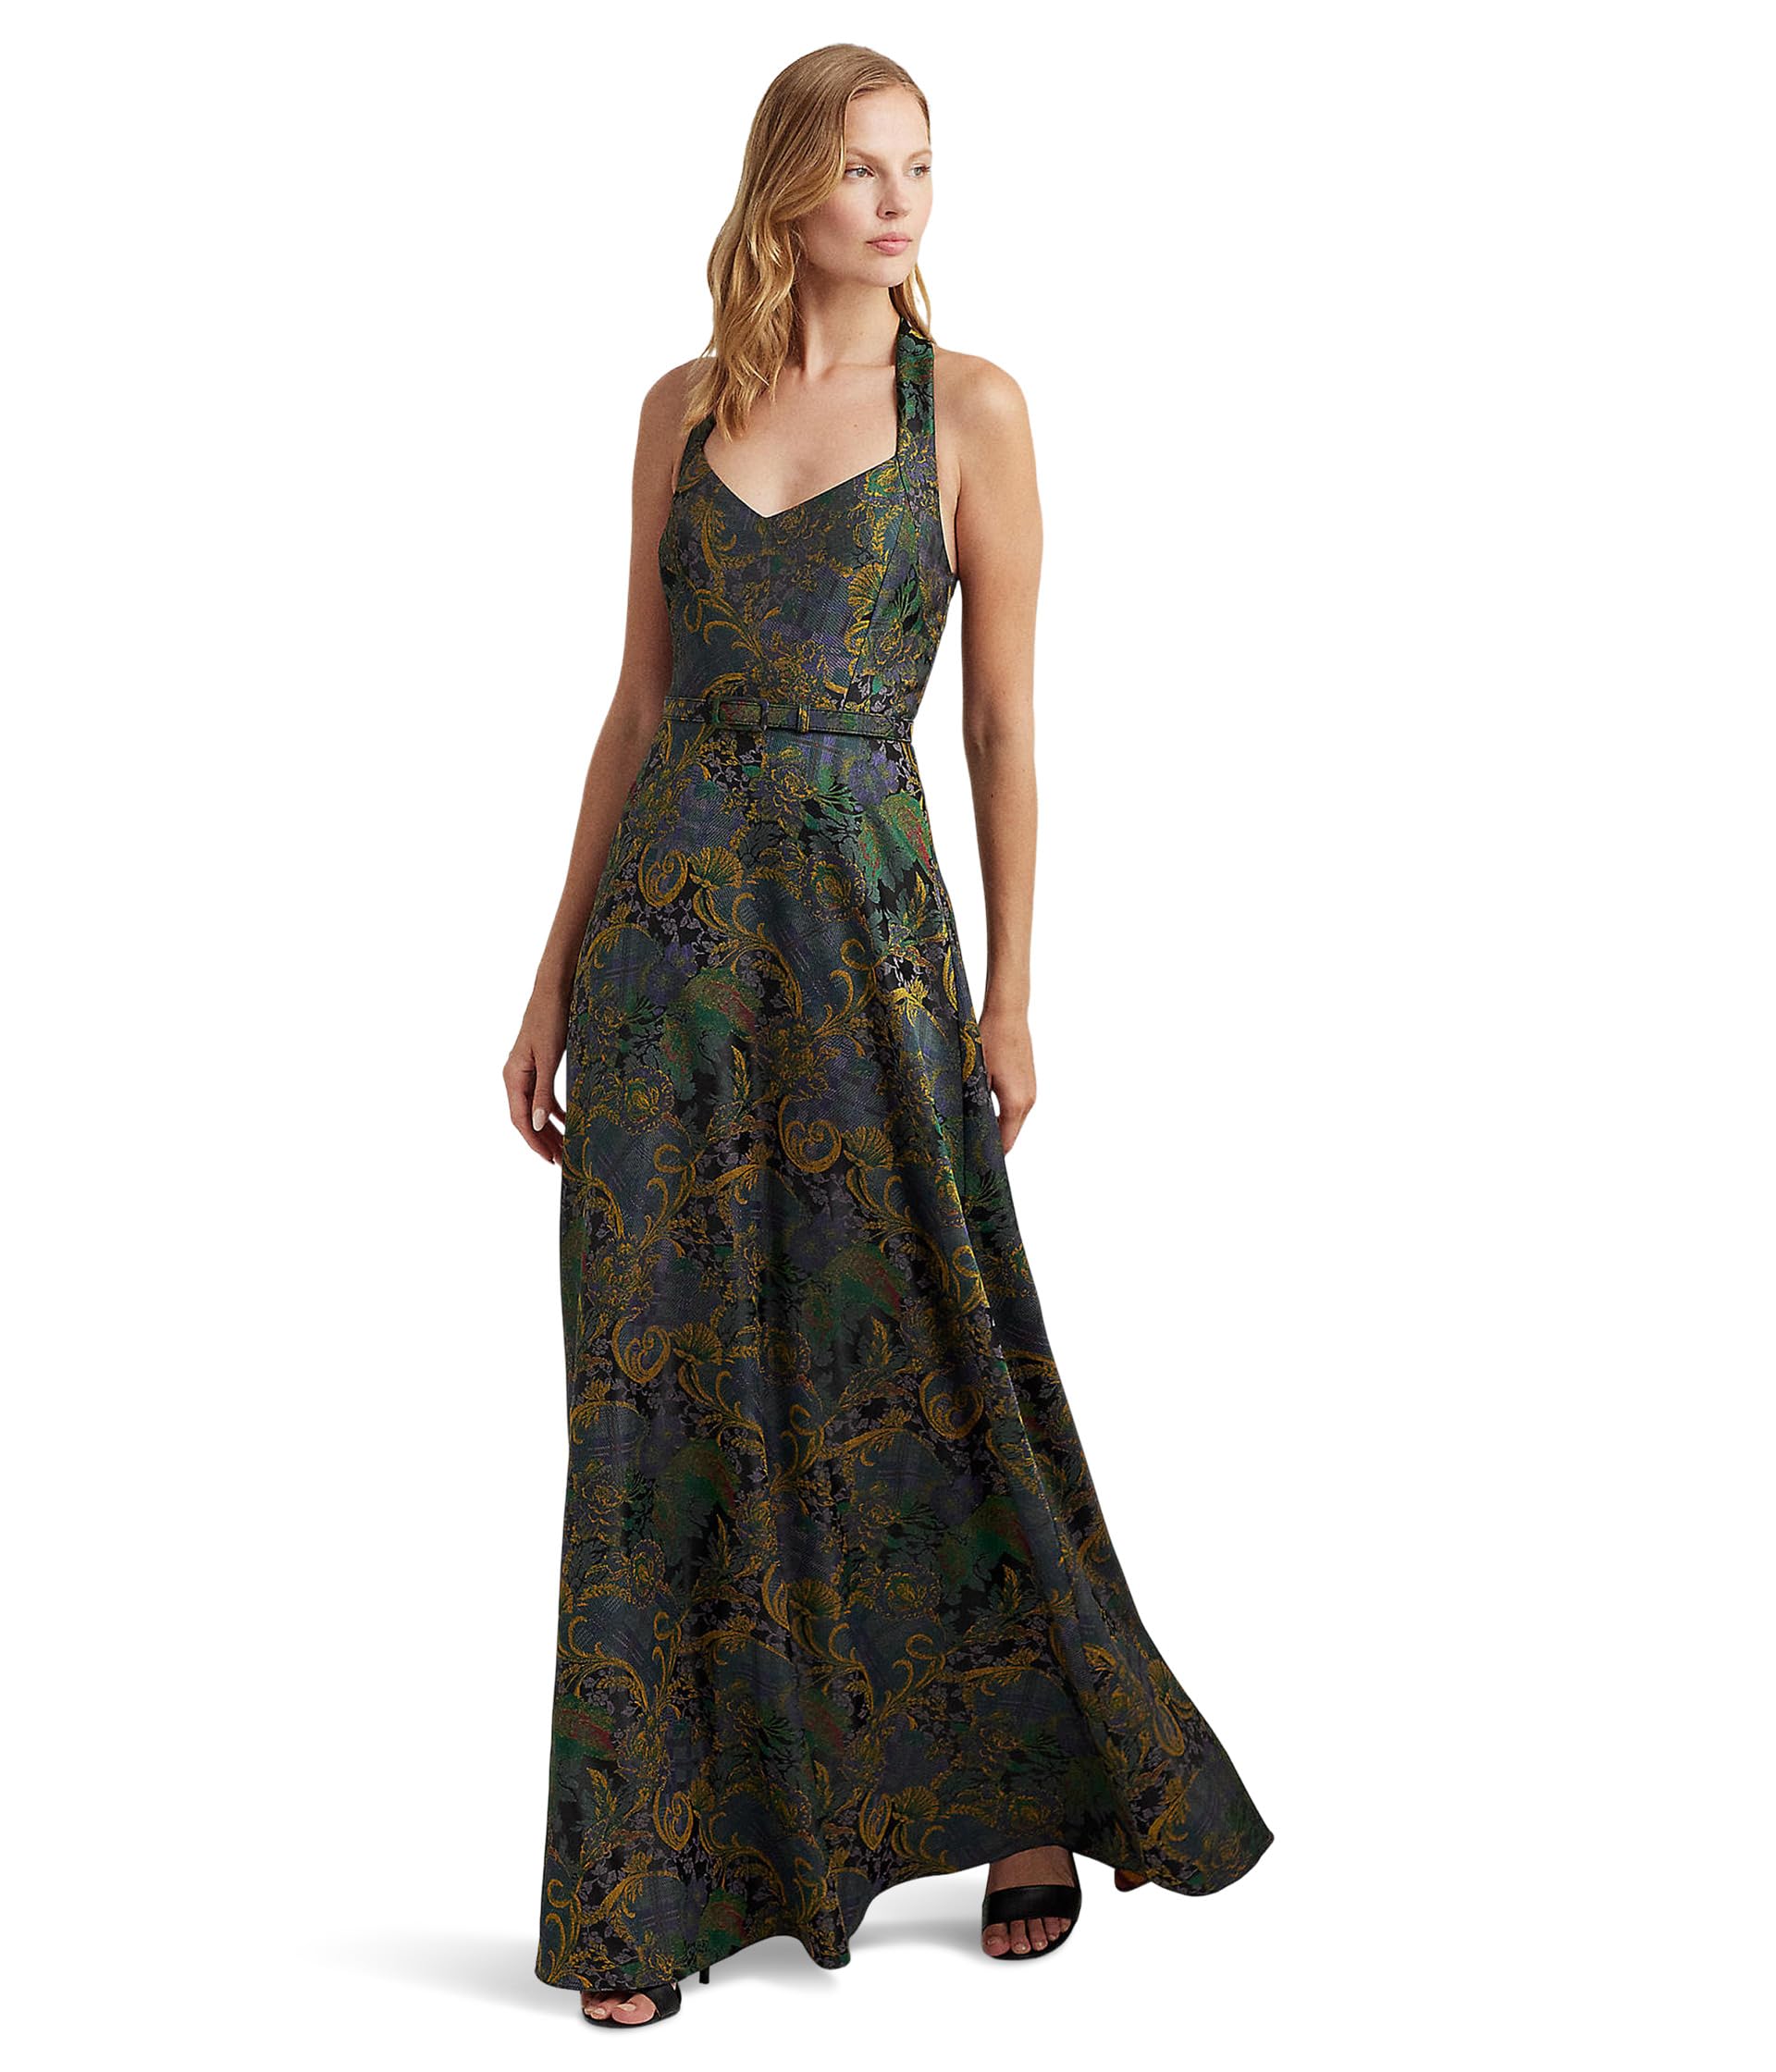 Жаккардовое платье с поясом и лямкой смешанного мотива LAUREN Ralph Lauren